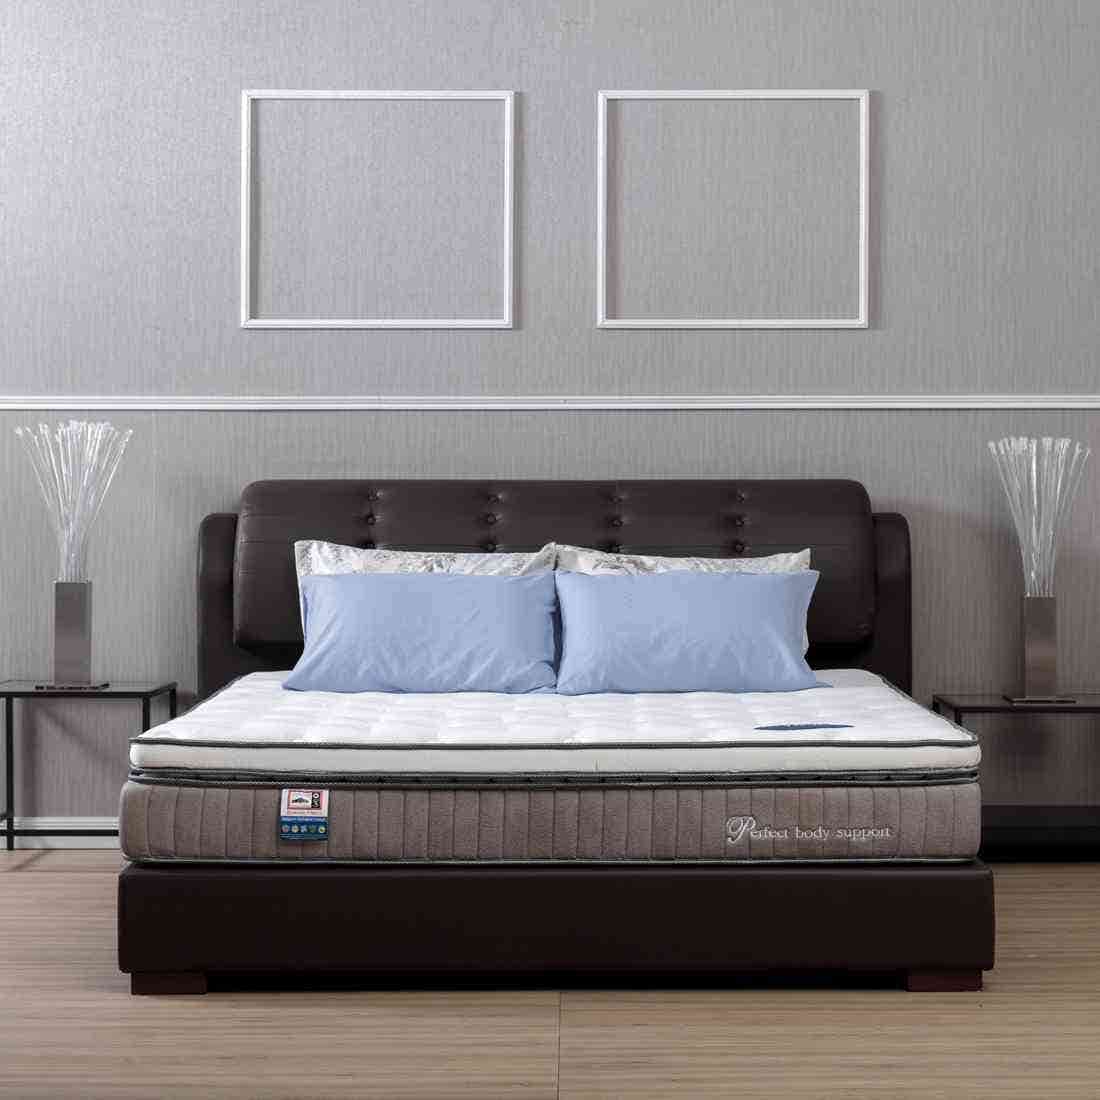 39014172-mattress-bedding-mattresses-foam-mattresses-31